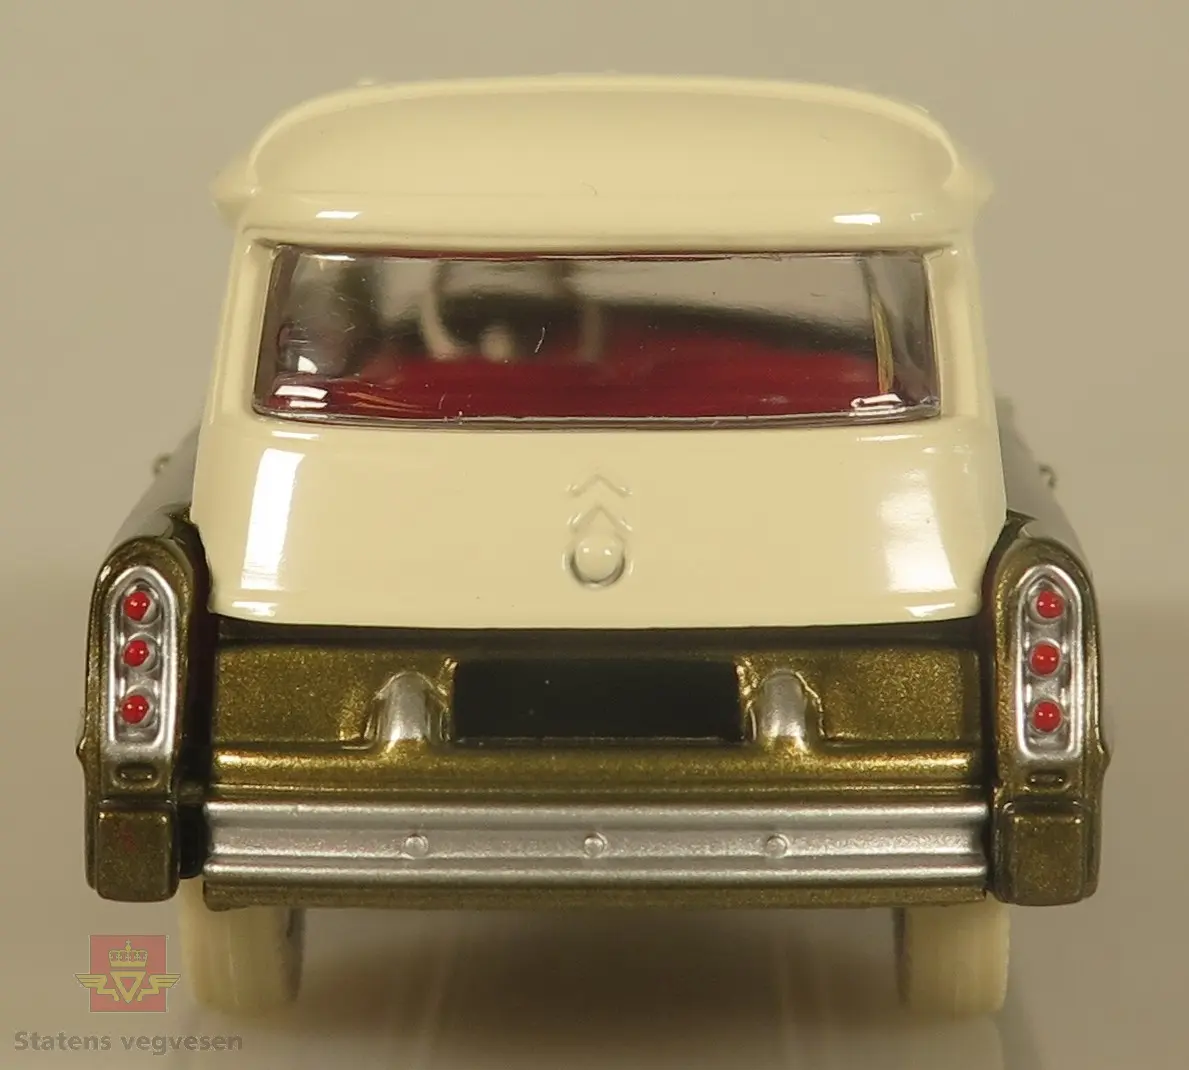 Modellbil av en Citroen 19 R.T.L. Modellbilen er farget rød og hvit, og ligner en sykebil men er en TV-bil.